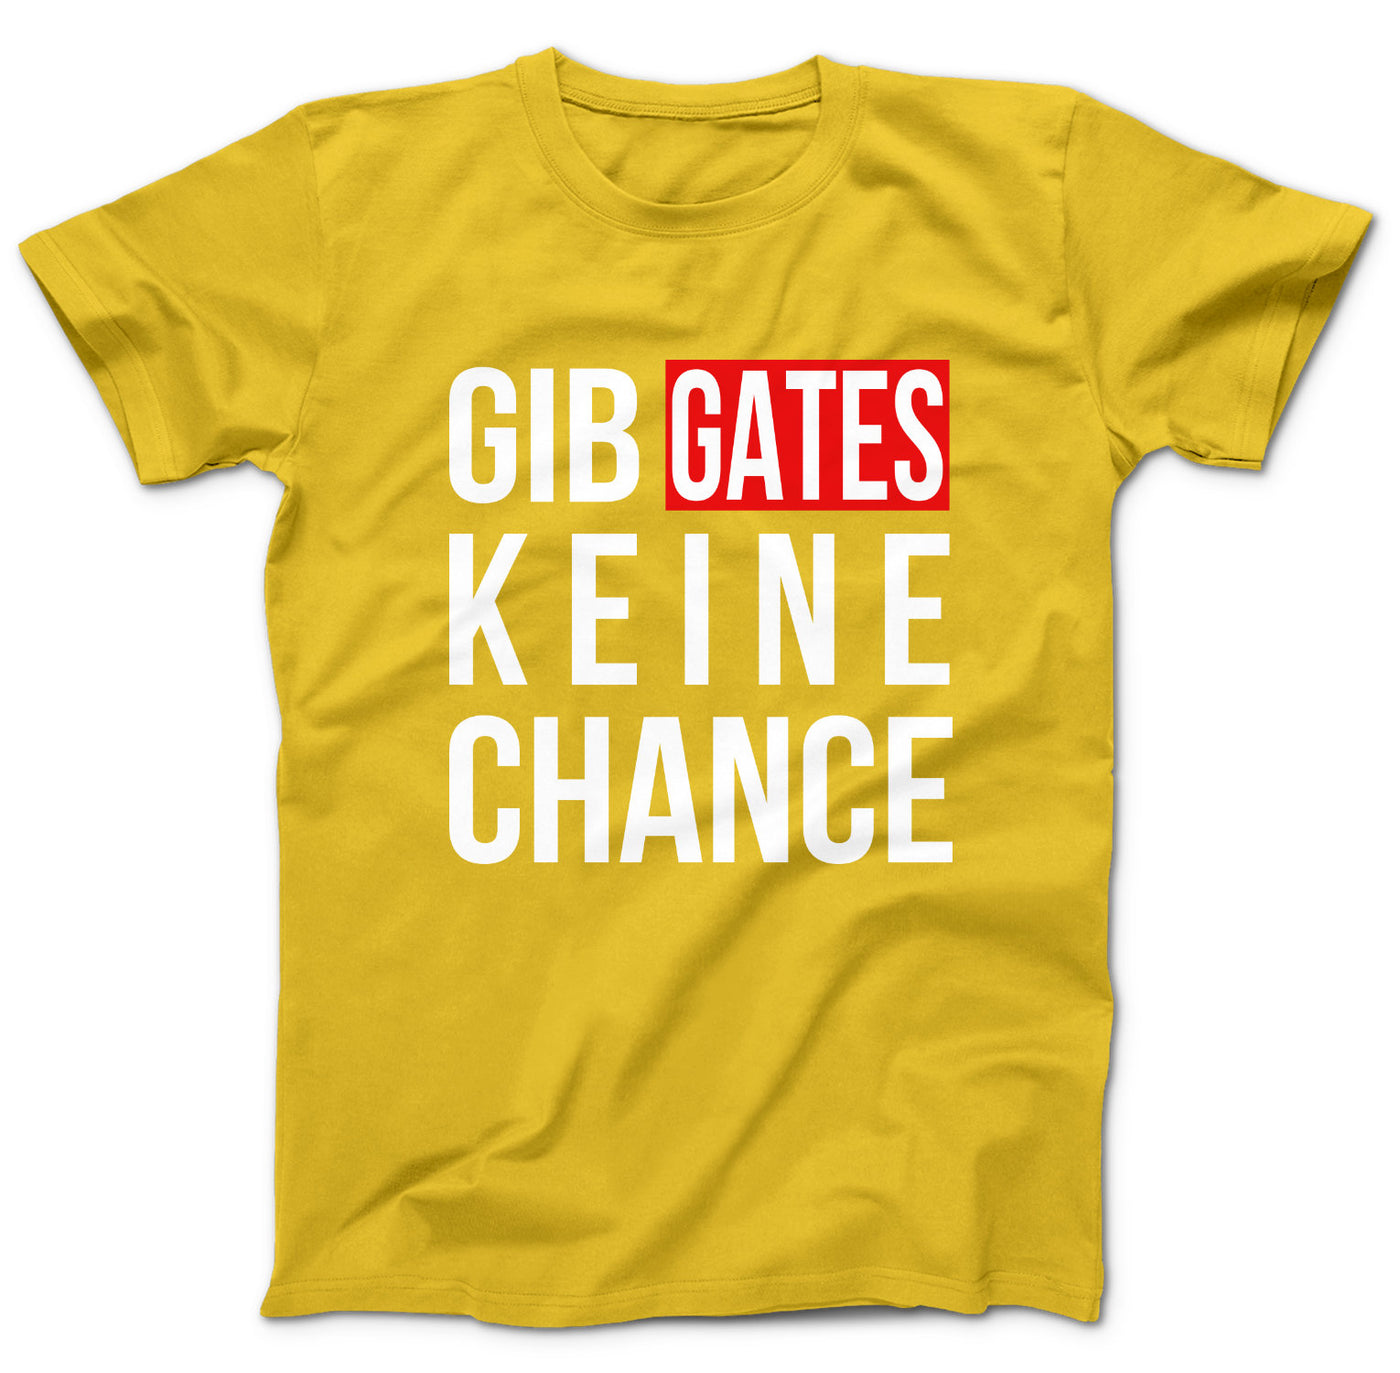 gib-gates-keine-chance-gelb-dd142mtscIRJNSuKfMlqw